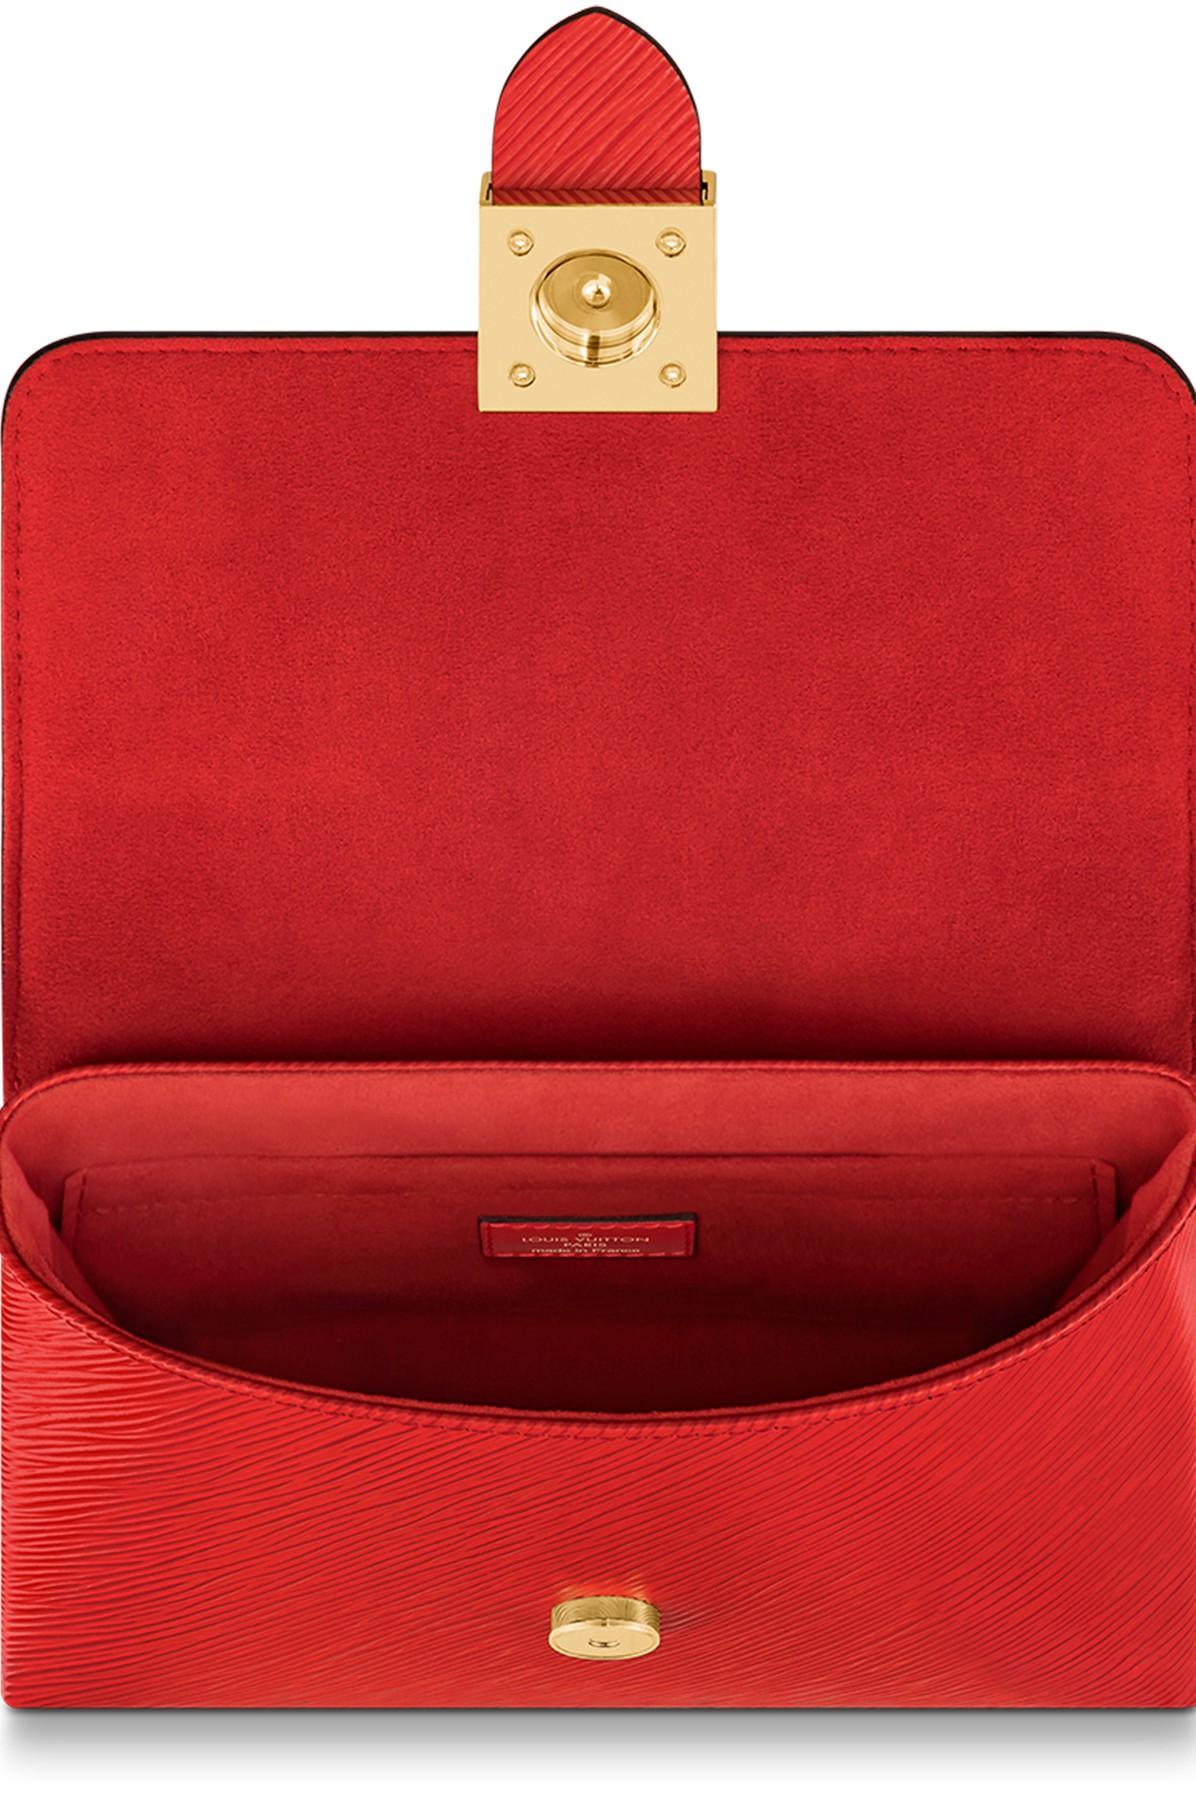 LV Red Sling Bag LOCKY BB Poppy - Price in India